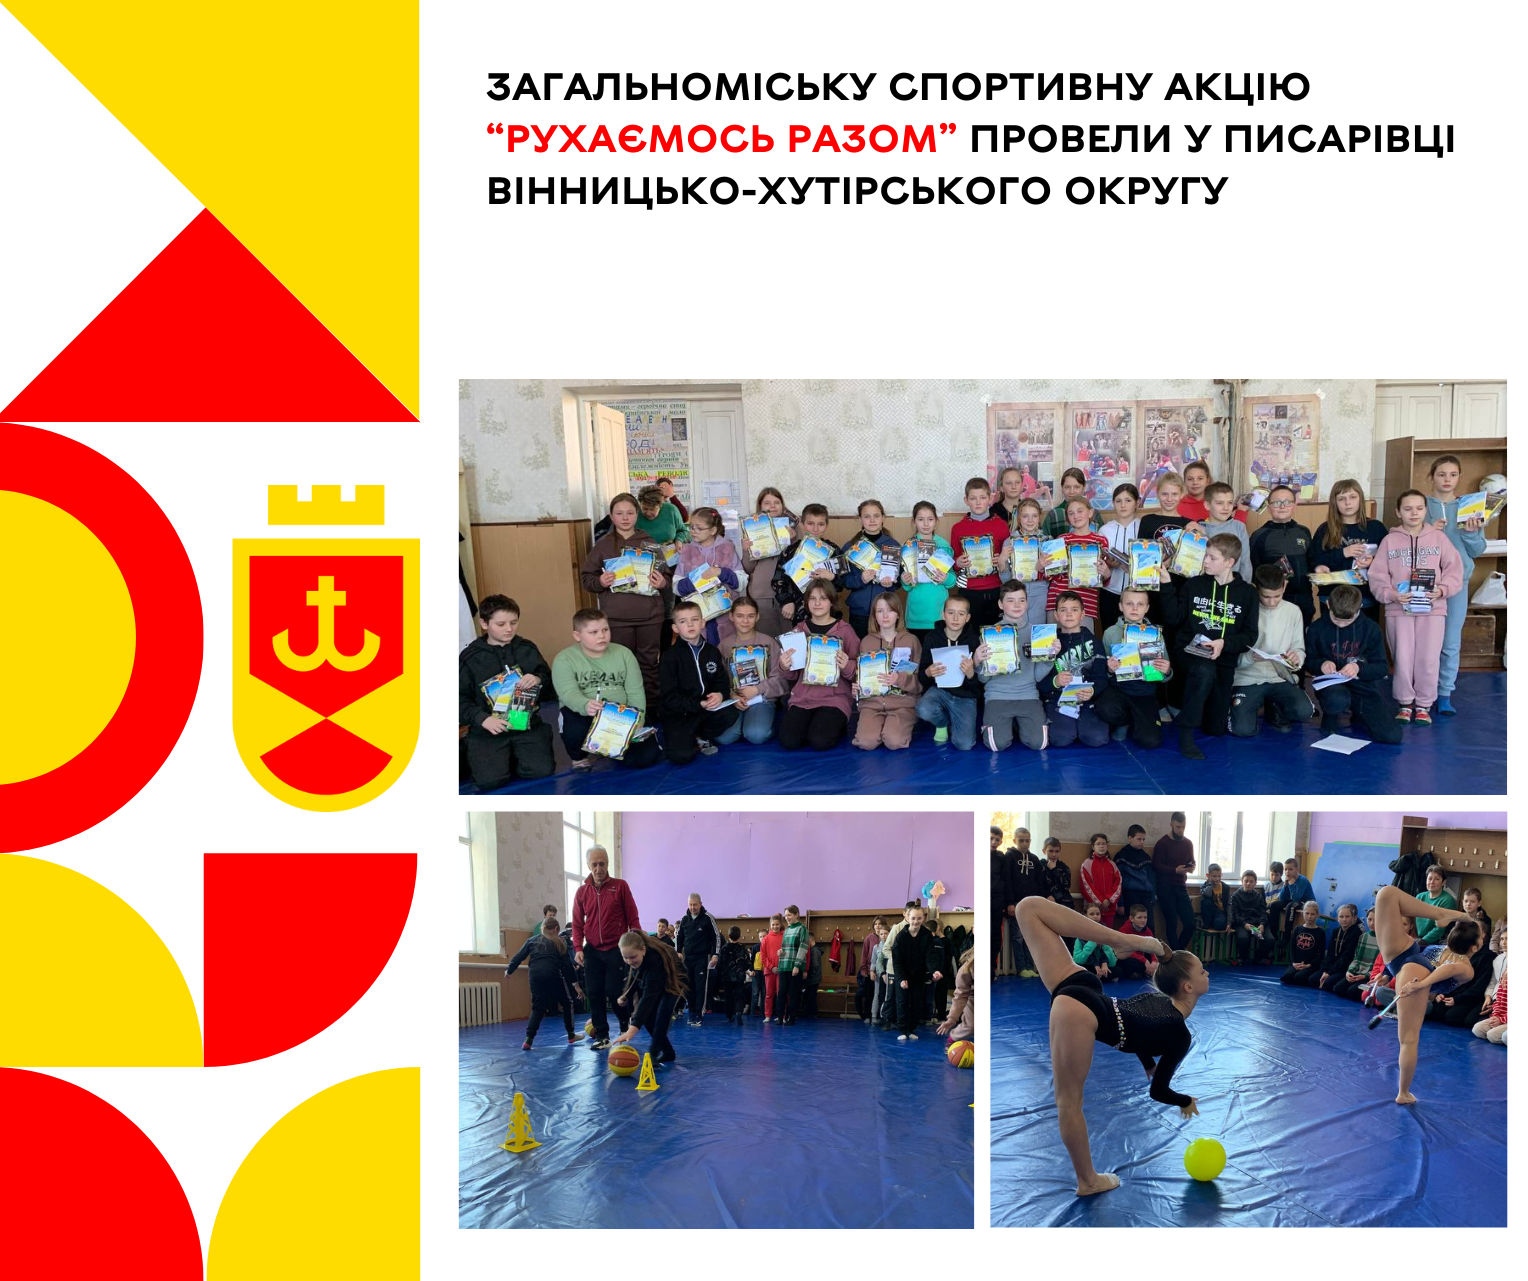 “Рухаємось разом”:  у Писарівці Вінницько-Хутірського округу провели загальноміську спортивну акцію